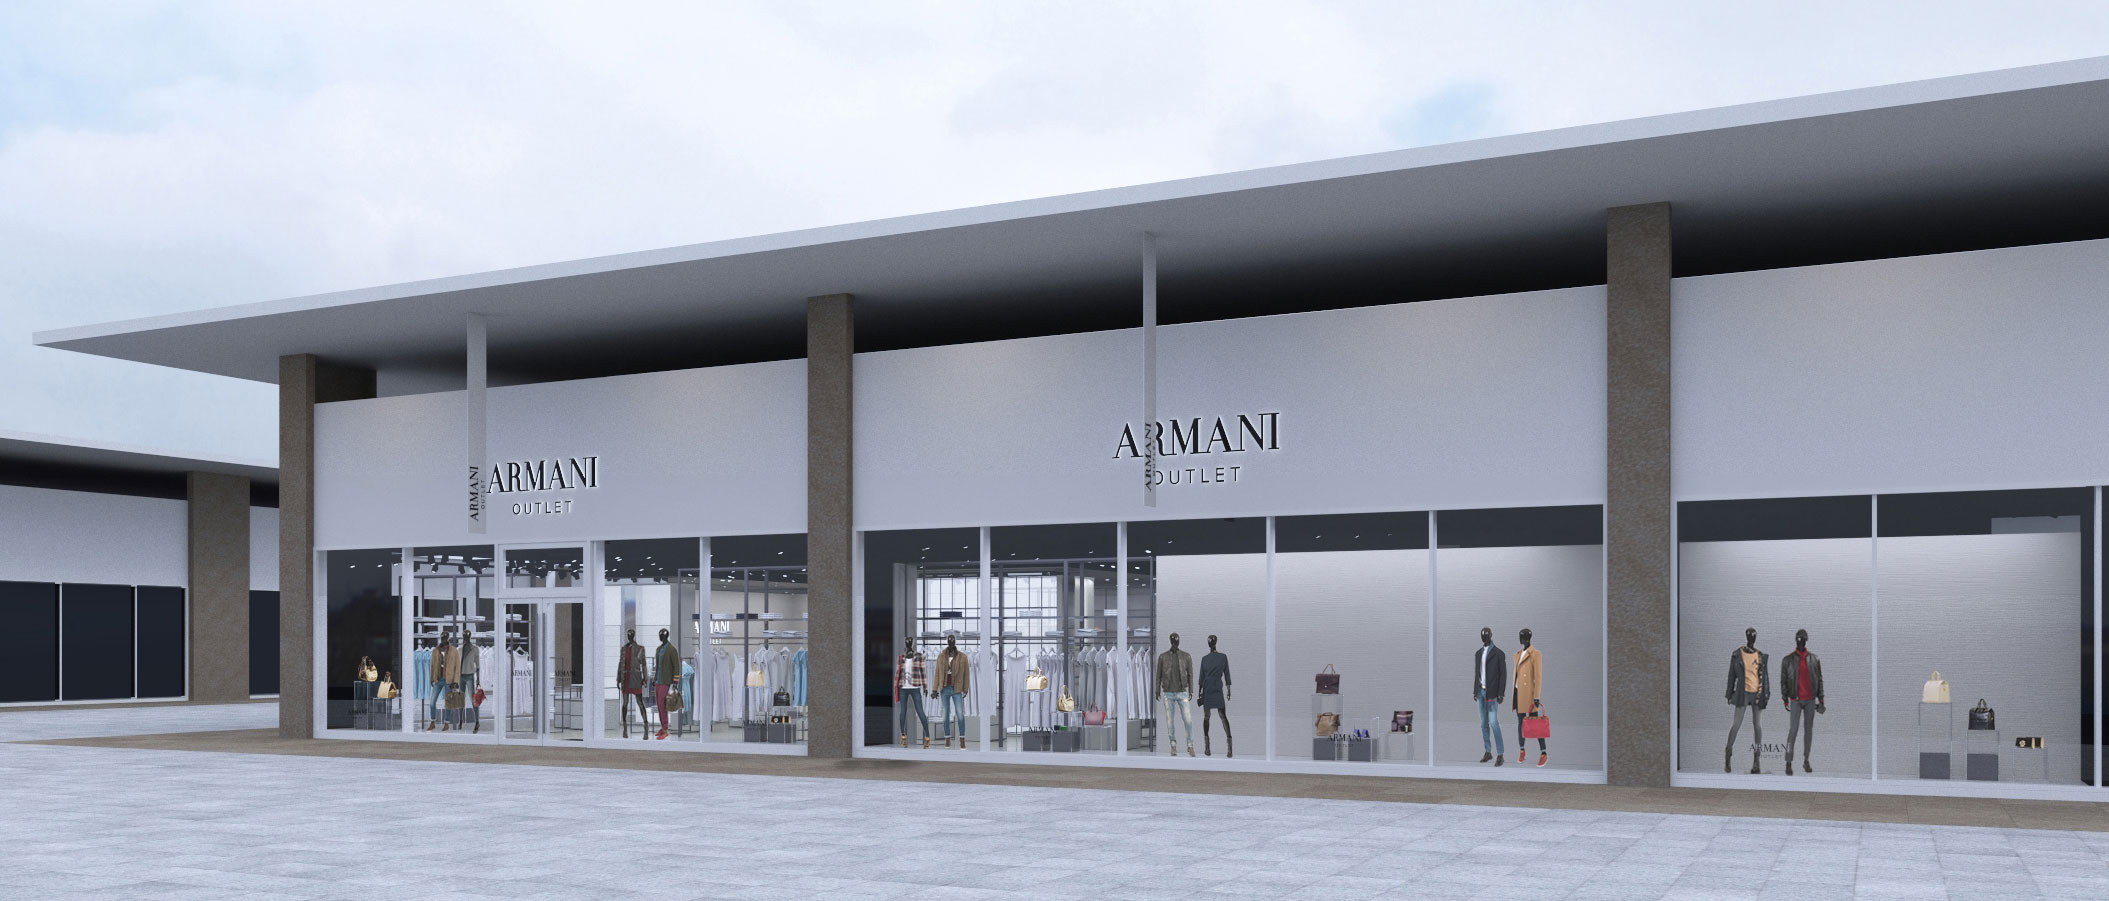 Milan Armani outlet refurbishment - outlet settimo torinese - Armani outlet  - architect firm Milan and Turin - G*AA Italian Architect - Attilio  Giaquinto | G*AA - Giaquinto Architetti Associati